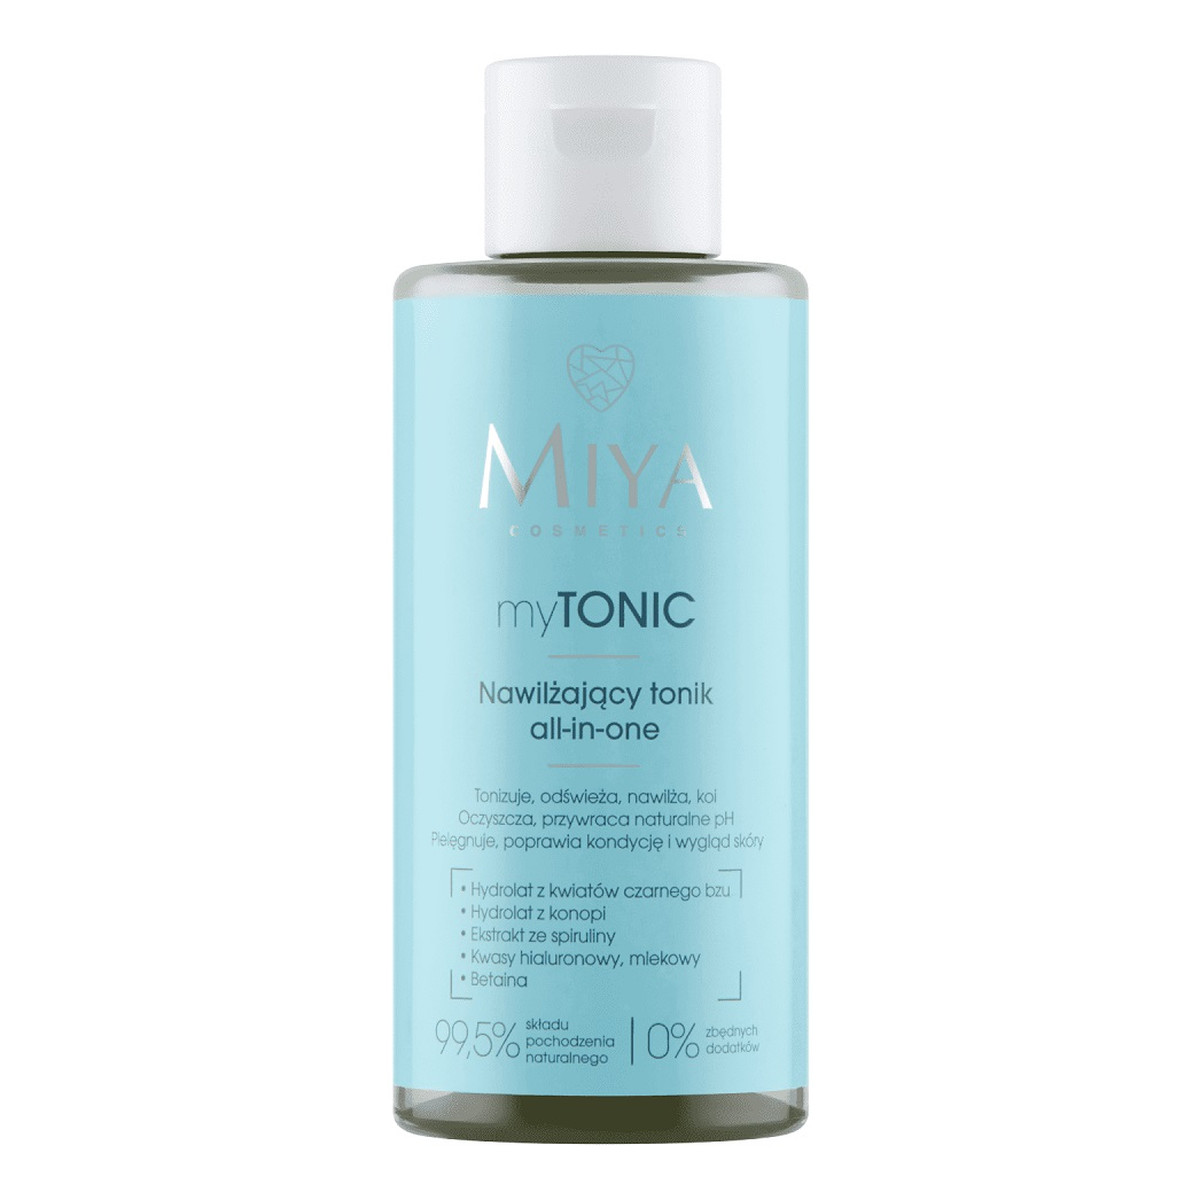 Miya Cosmetics Mytonic nawilżający tonik all-in-one 150ml